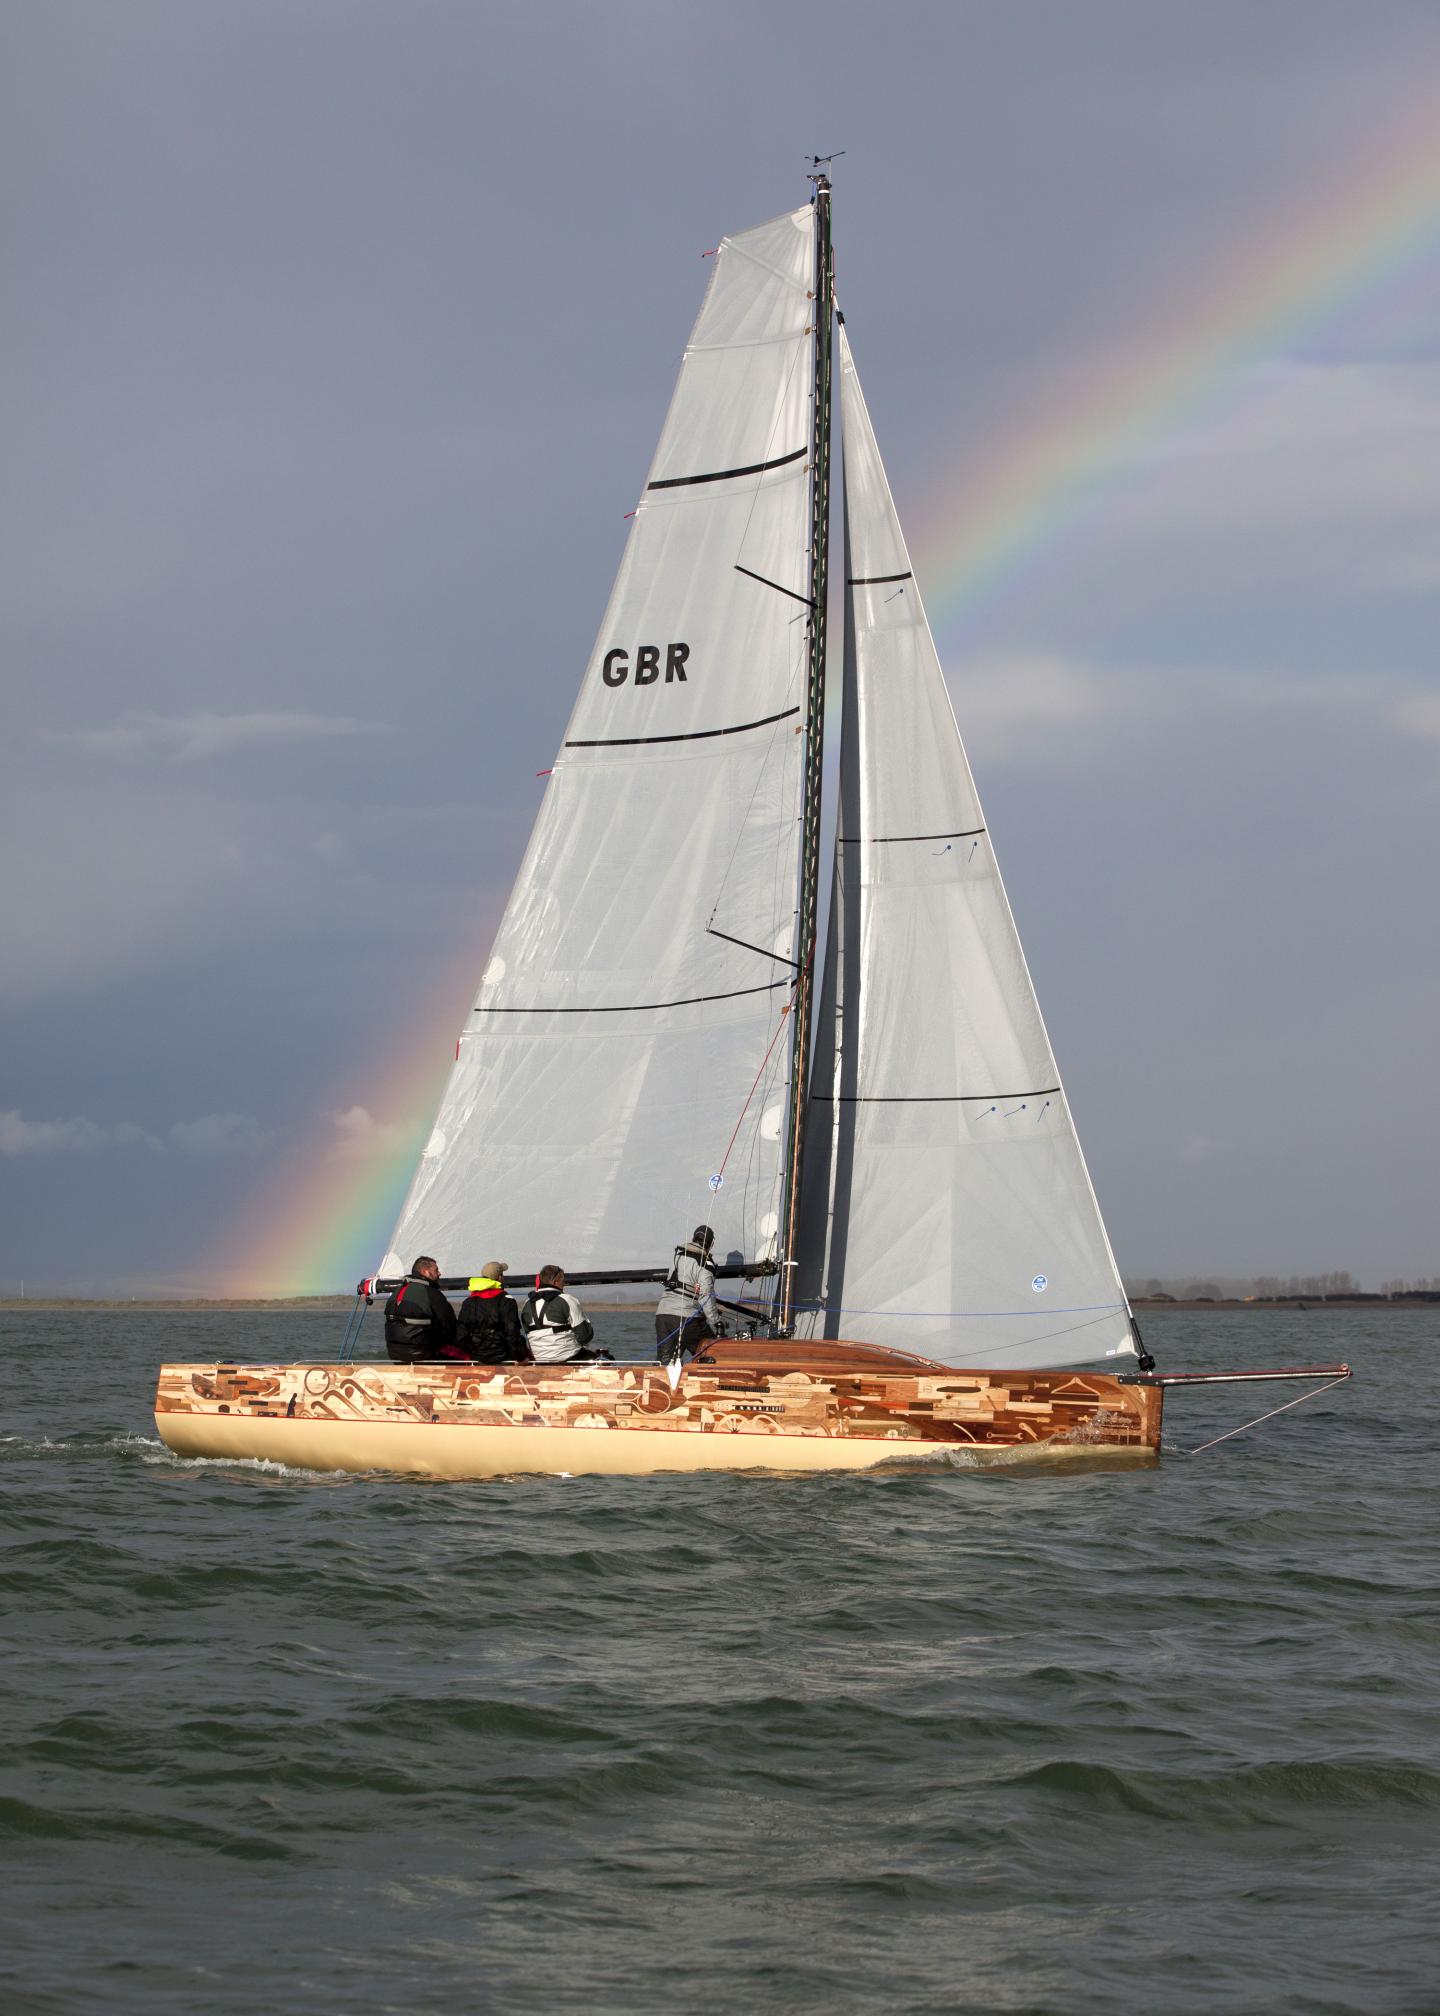 Sailing ship at sea with a rainbow